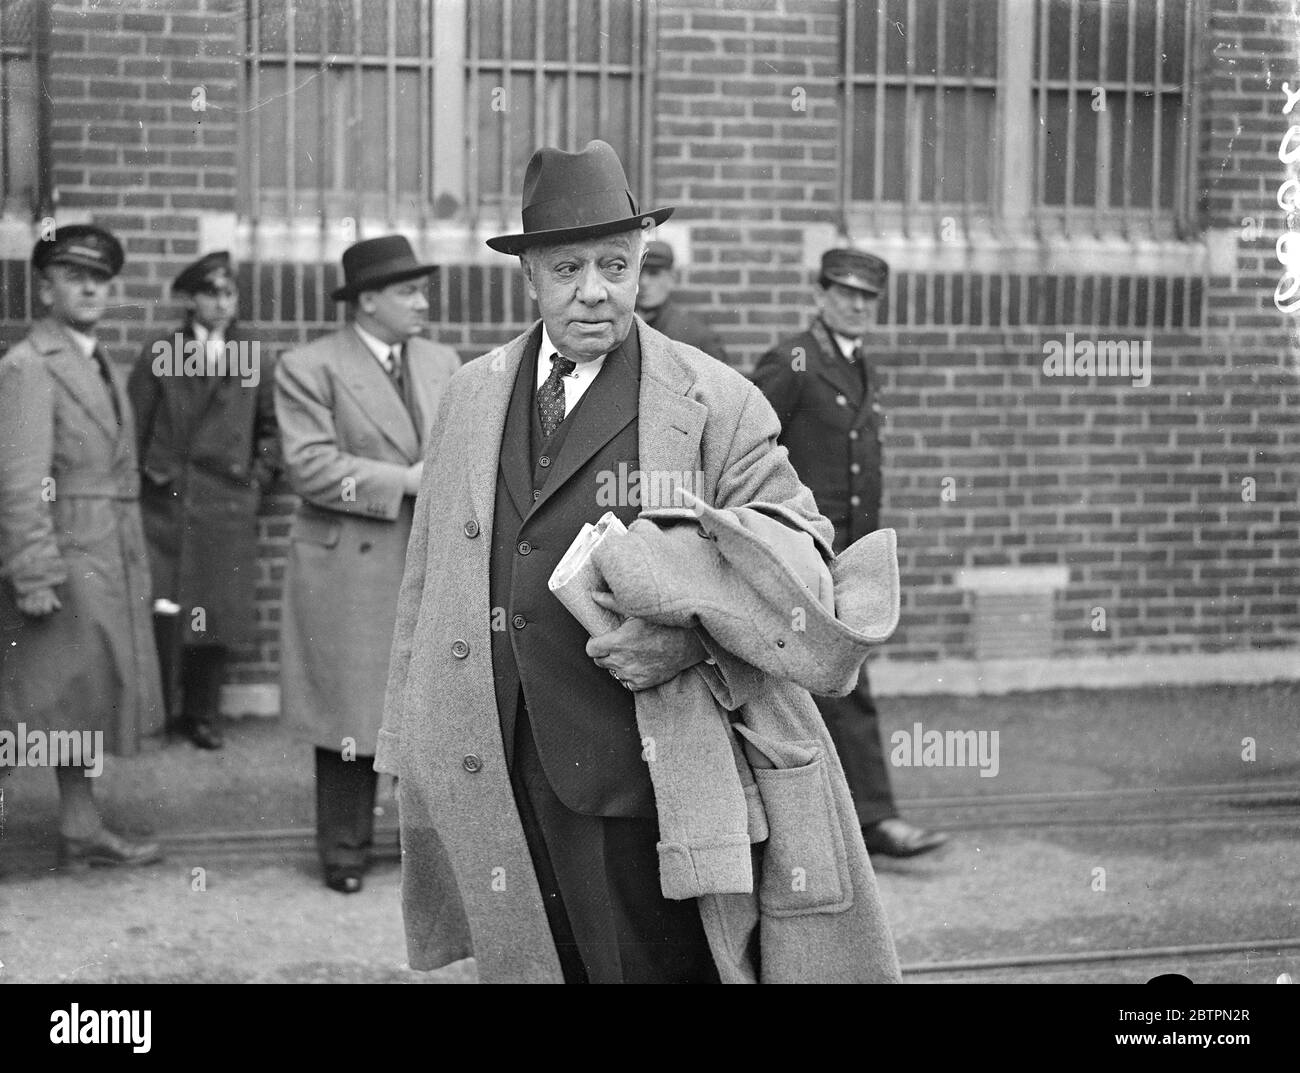 L'acteur shakespearien vétéran américain arrive. Otis Skinner, ancien acteur shakespearien américain, est arrivé à Southampton à bord des Europs de New York. Spectacles photo, Otis Skinner à l'arrivée à Southampton. 16 avril 1937 Banque D'Images